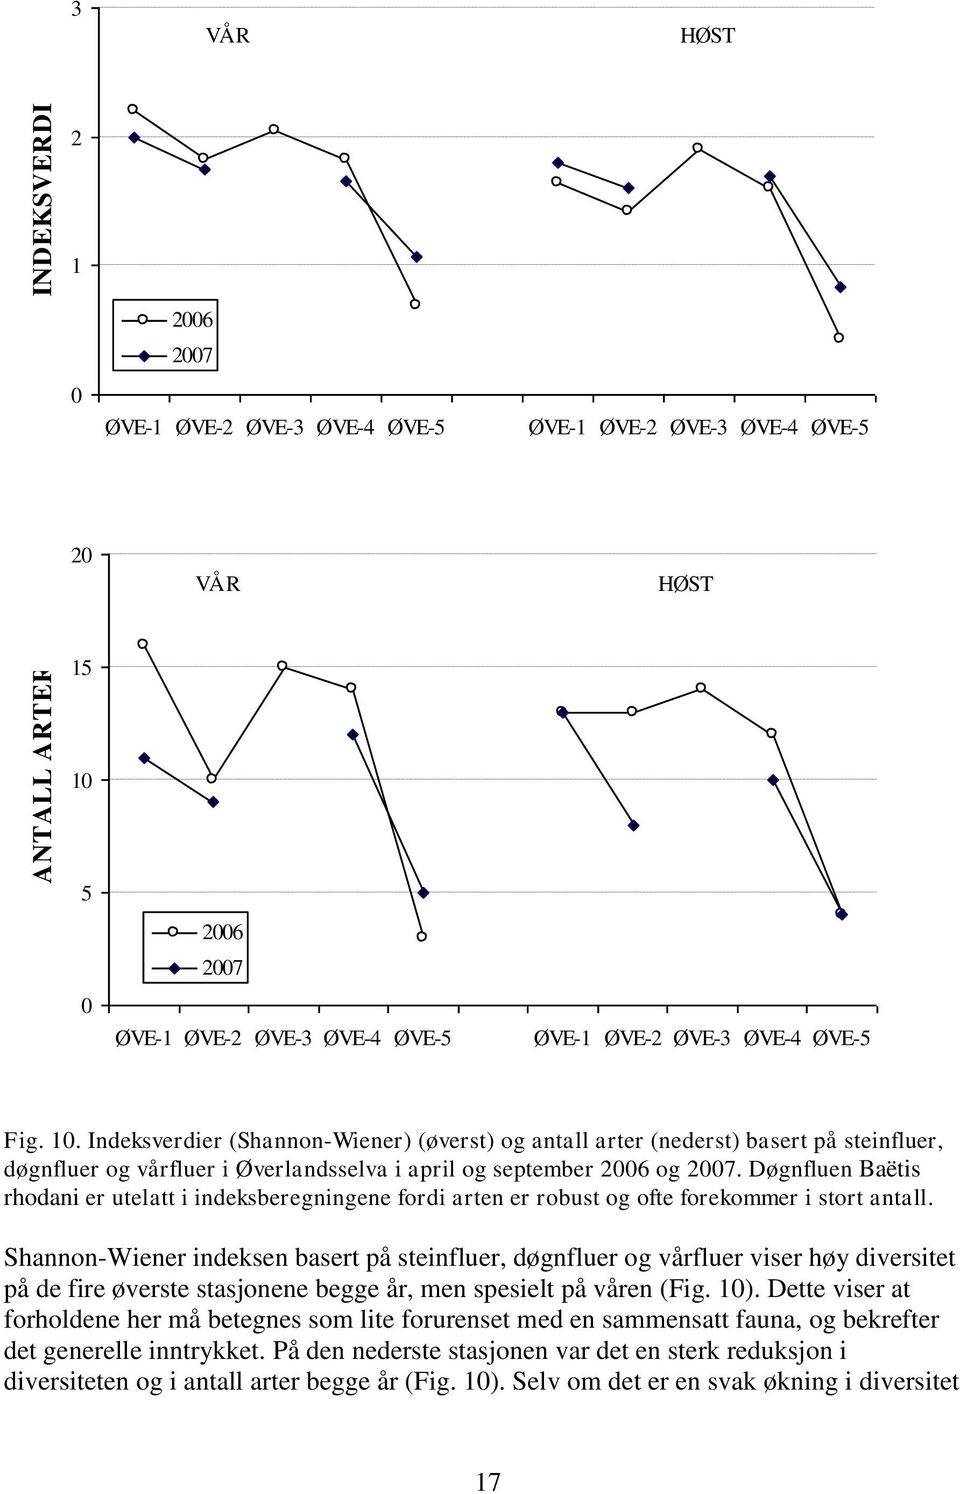 Shannon-Wiener indeksen basert på steinfluer, døgnfluer og vårfluer viser høy diversitet på de fire øverste stasjonene begge år, men spesielt på våren (Fig. 1).